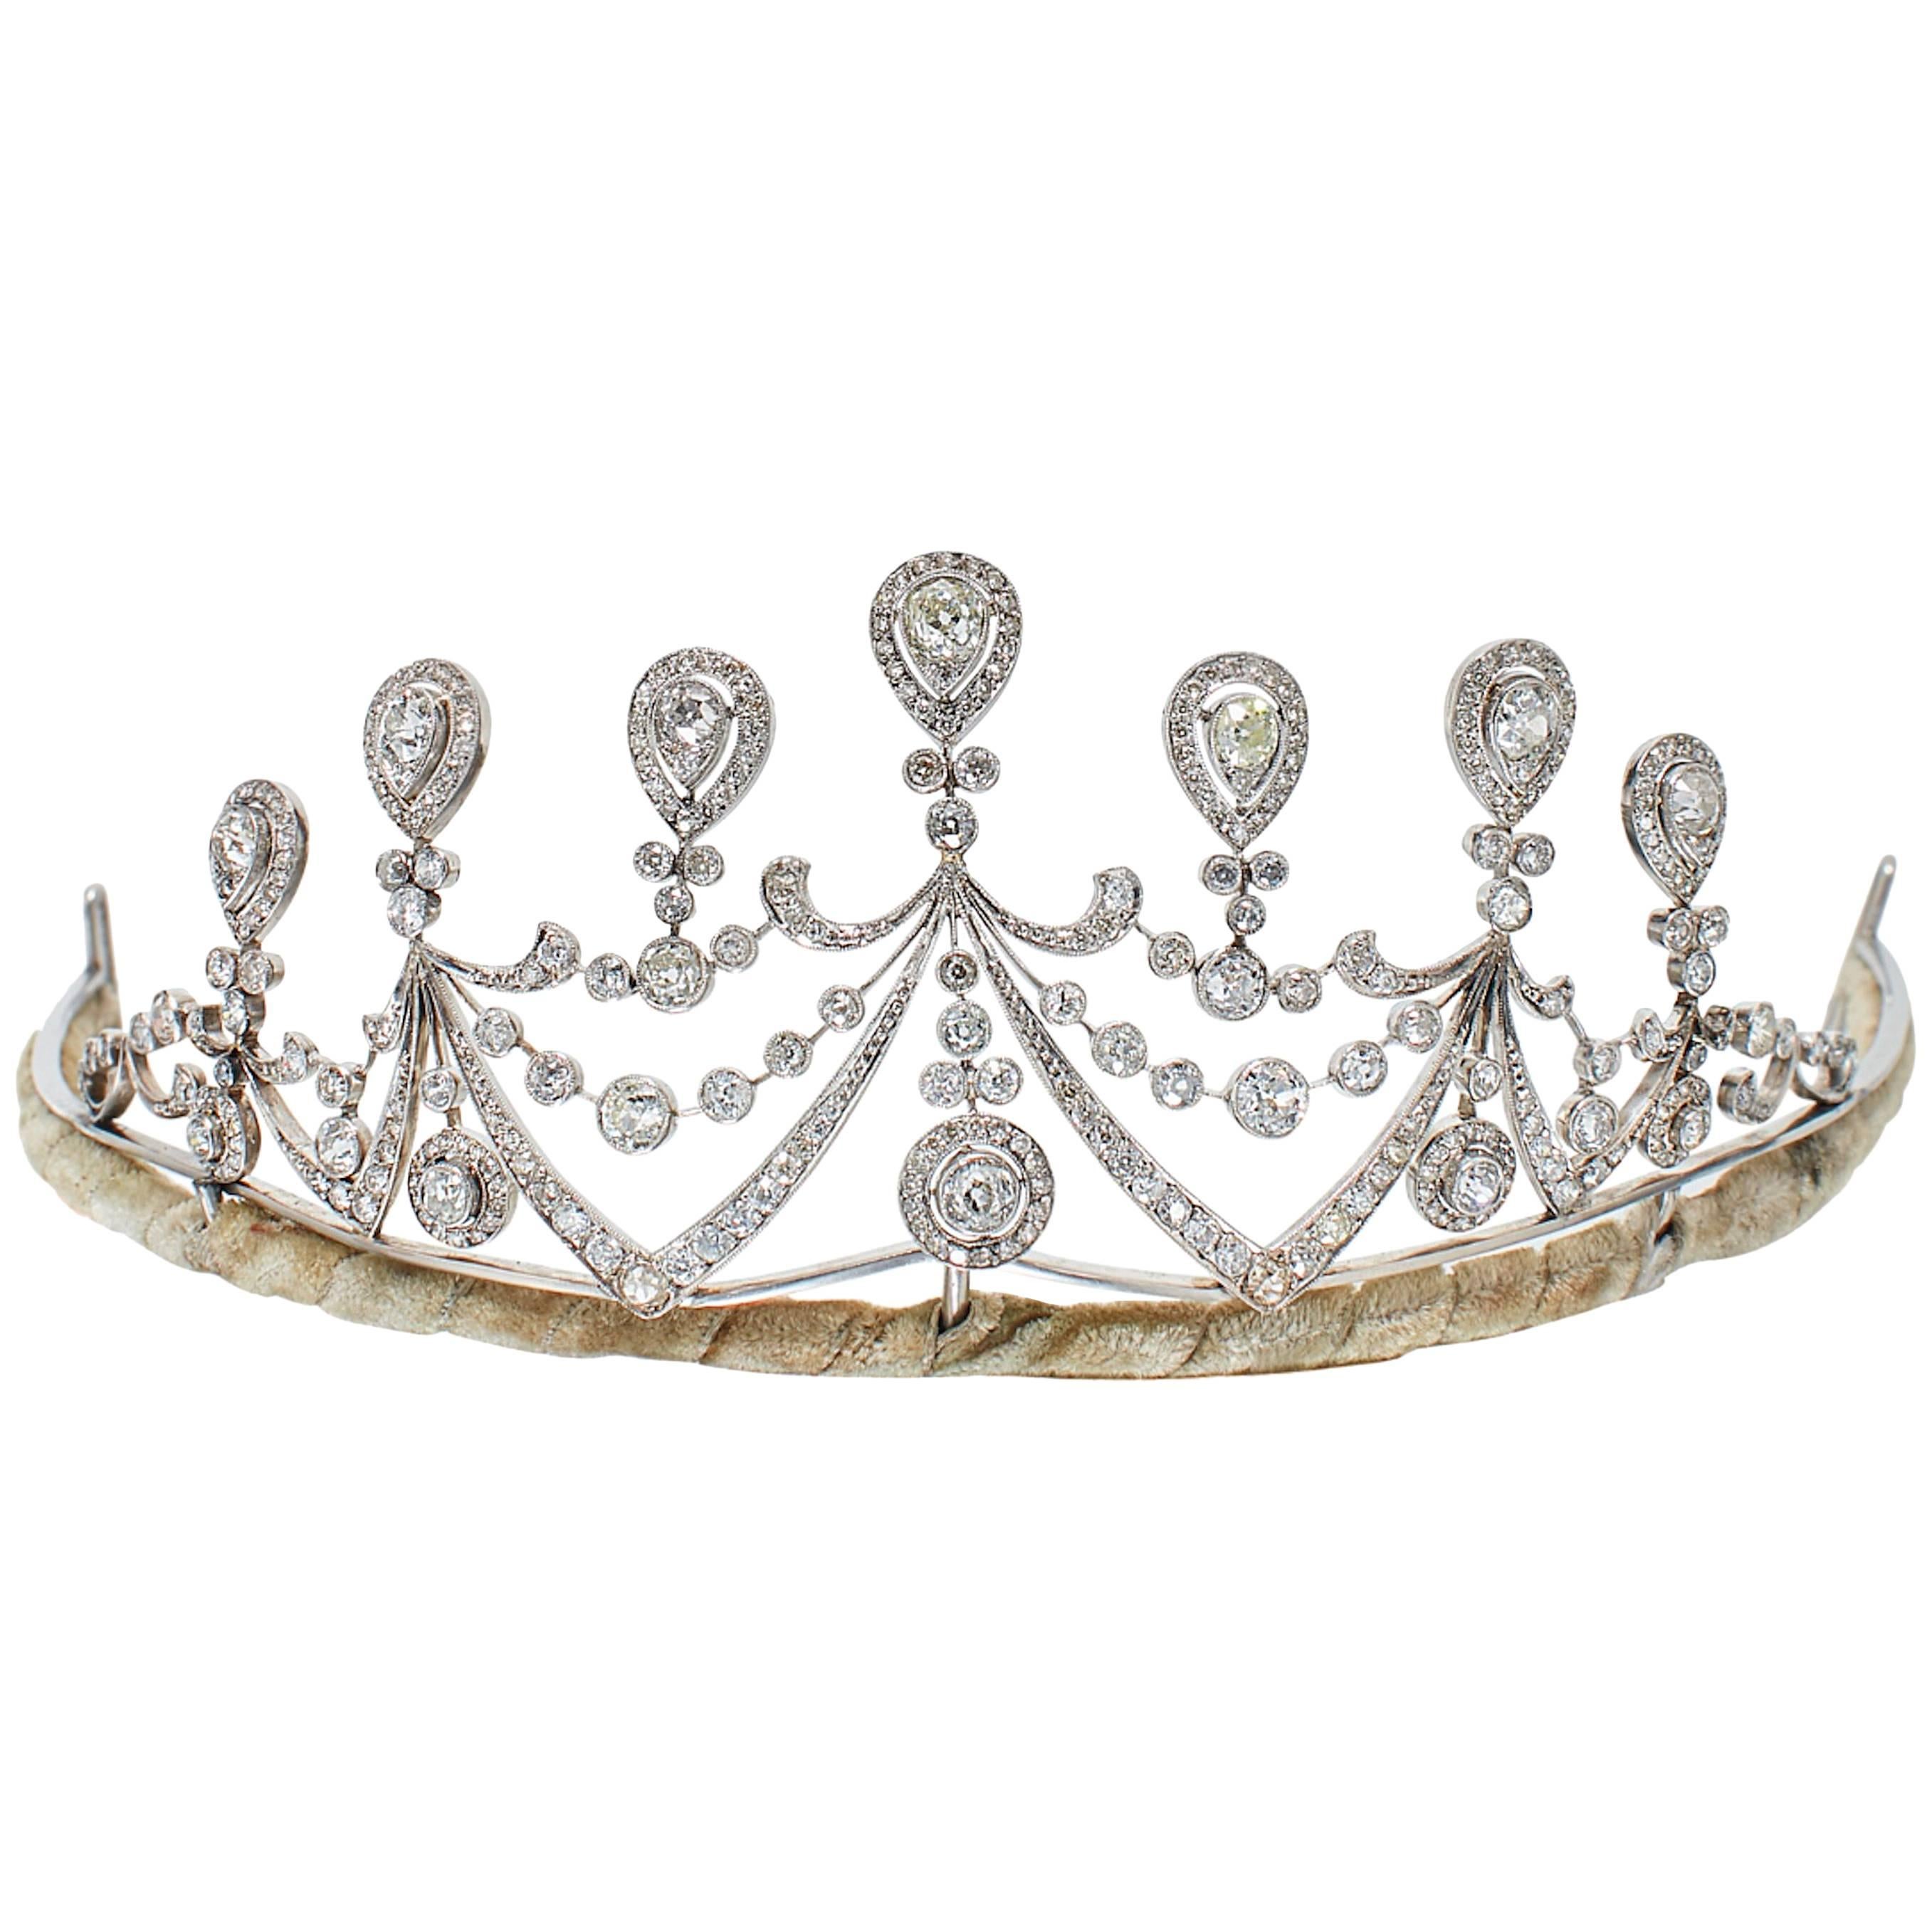 1910s Antique Diamond and Platinum Tiara